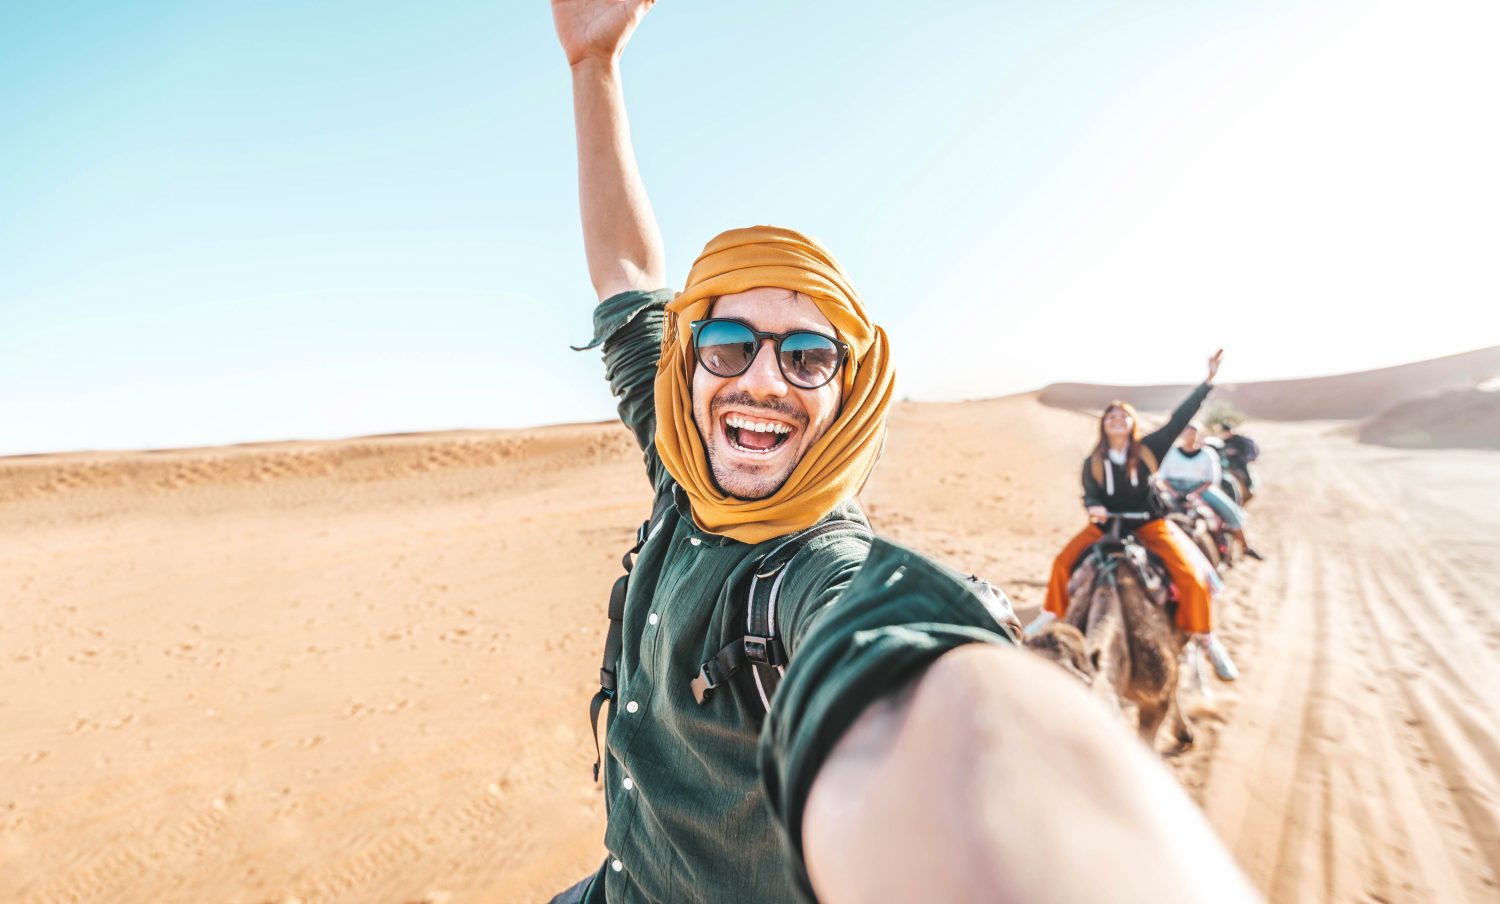 Turista felice che si diverte godendosi un tour di gruppo in cammello nel deserto - Viaggi, stile di vita, attività di vacanza e concetto di avventura